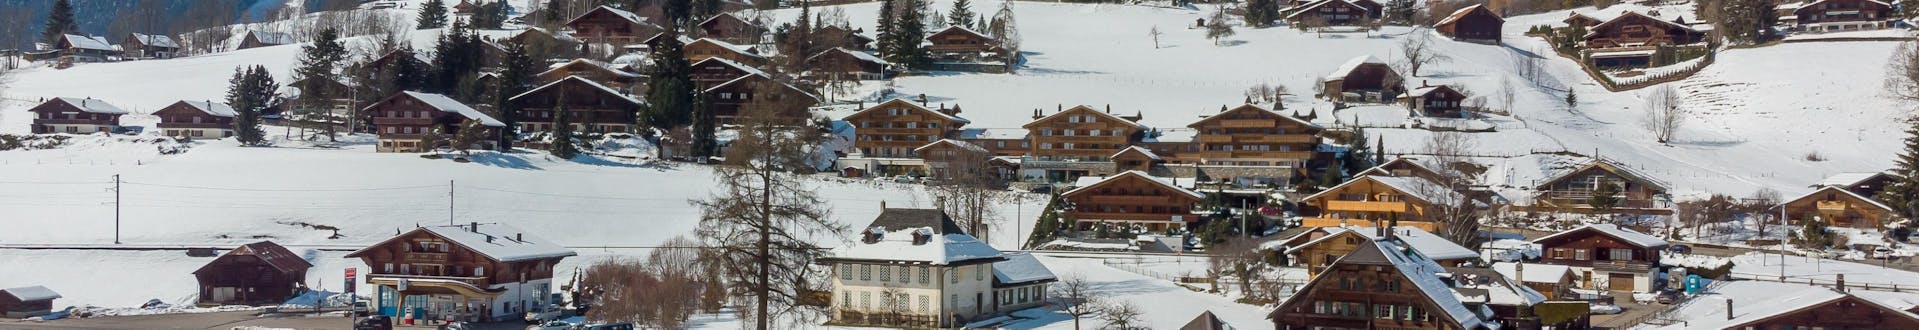 Vogelperspektive von Rougemont in der Schweiz, das im Winter mit Schnee bedeckt ist.